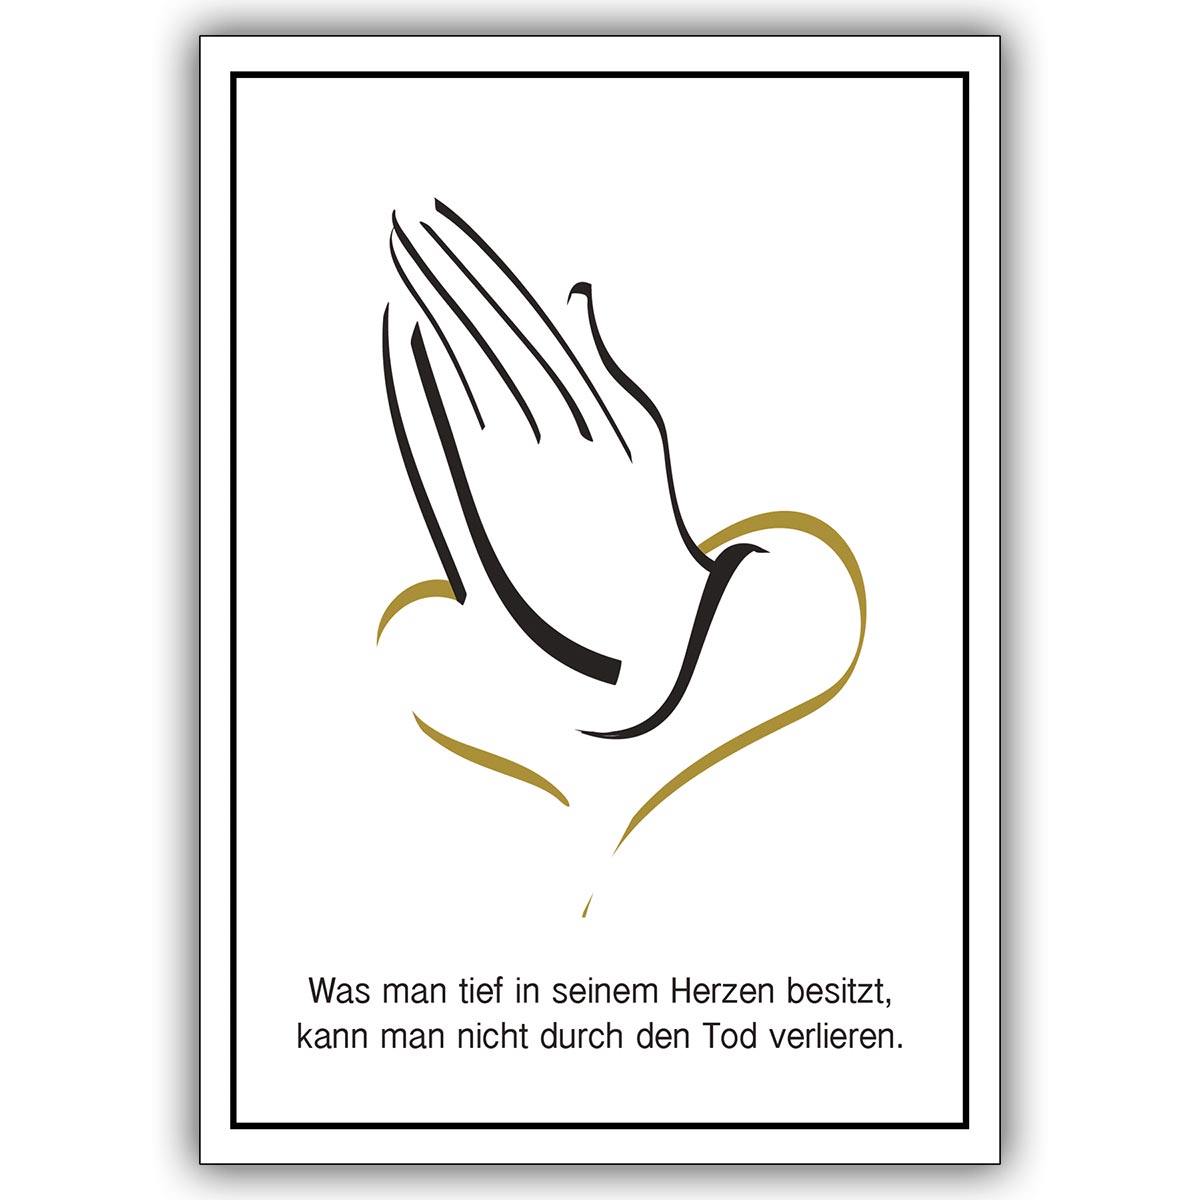 Tröstende Trauerkarte mit Beileidsspruch, Motiv: betende Hände und Herz